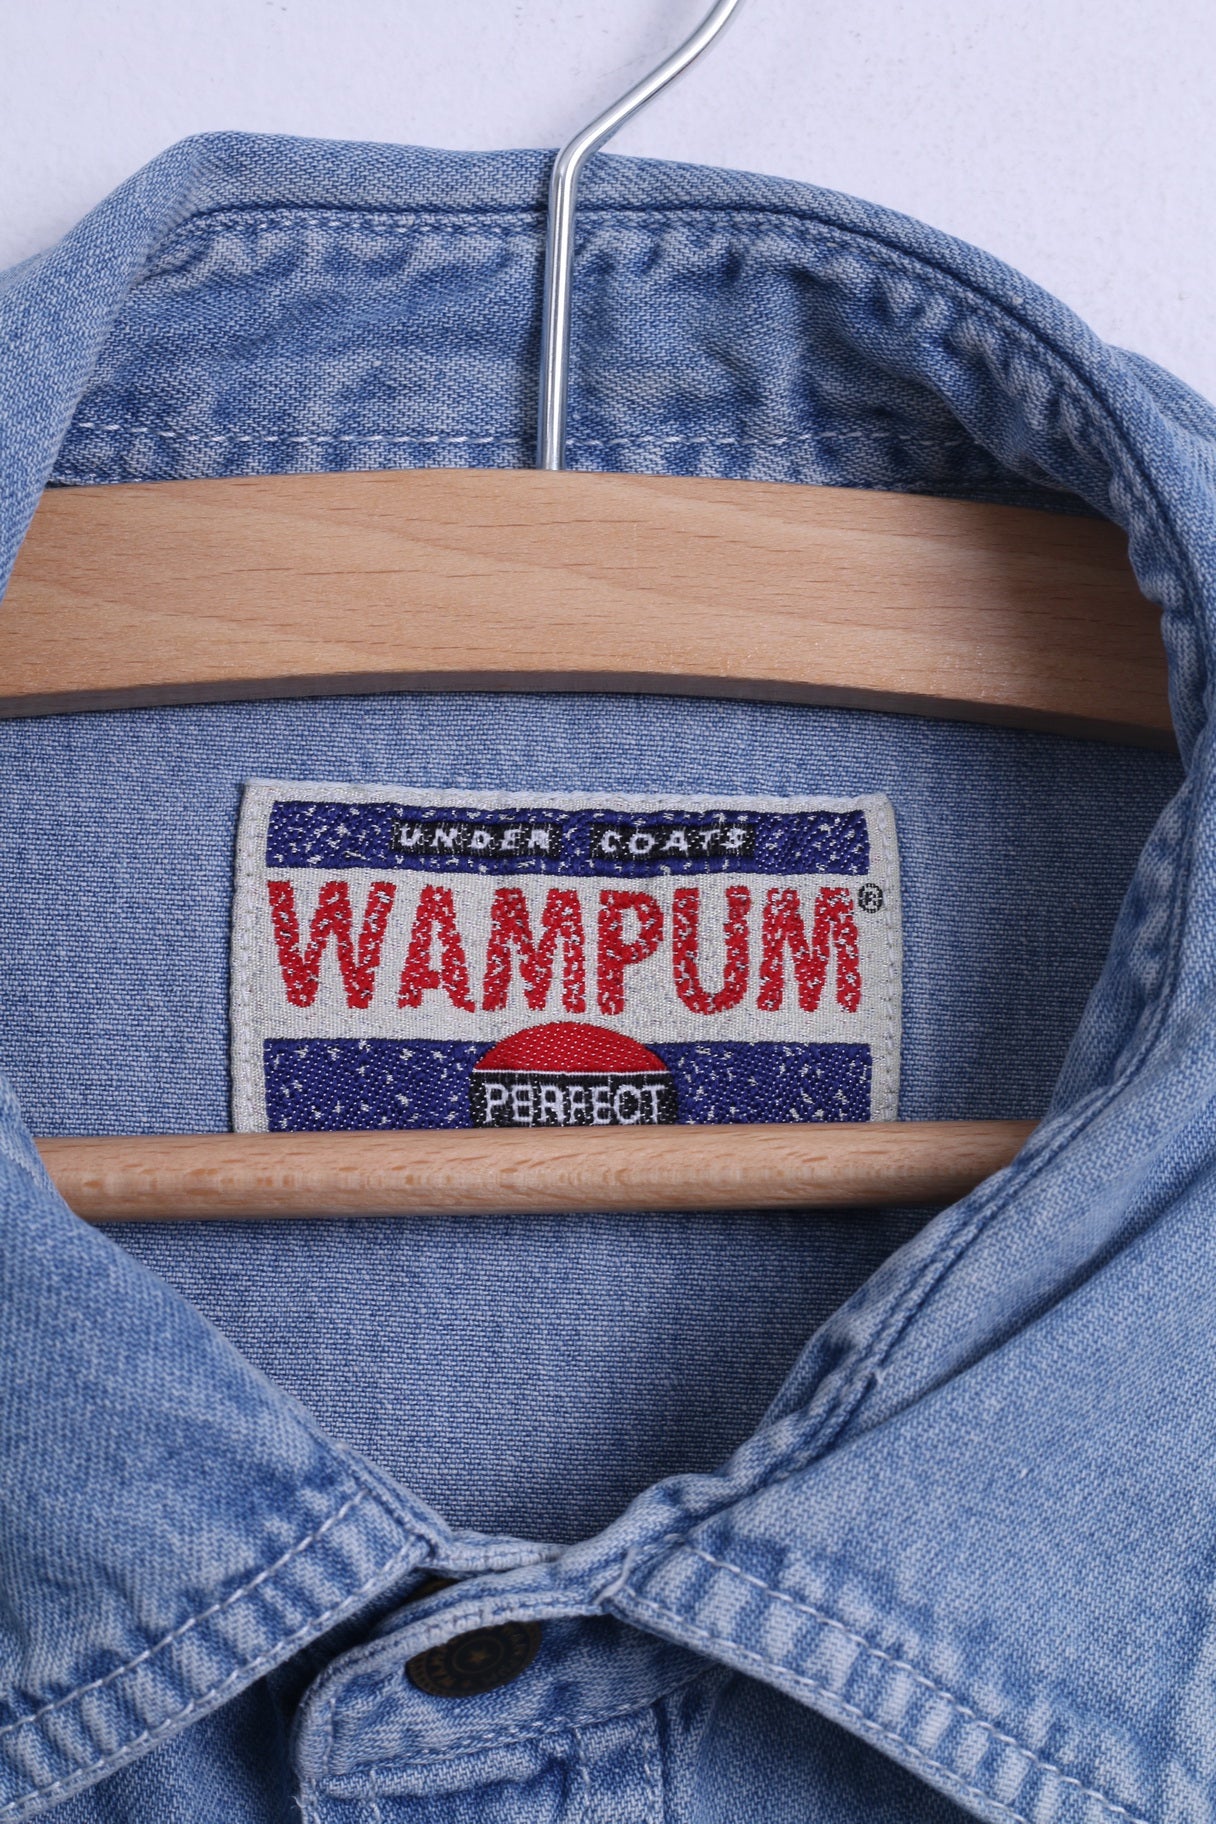 WAMPUM Mens L (M) Casual Shirt Light Blue Cotton Jeans Vintage Popper Buttons